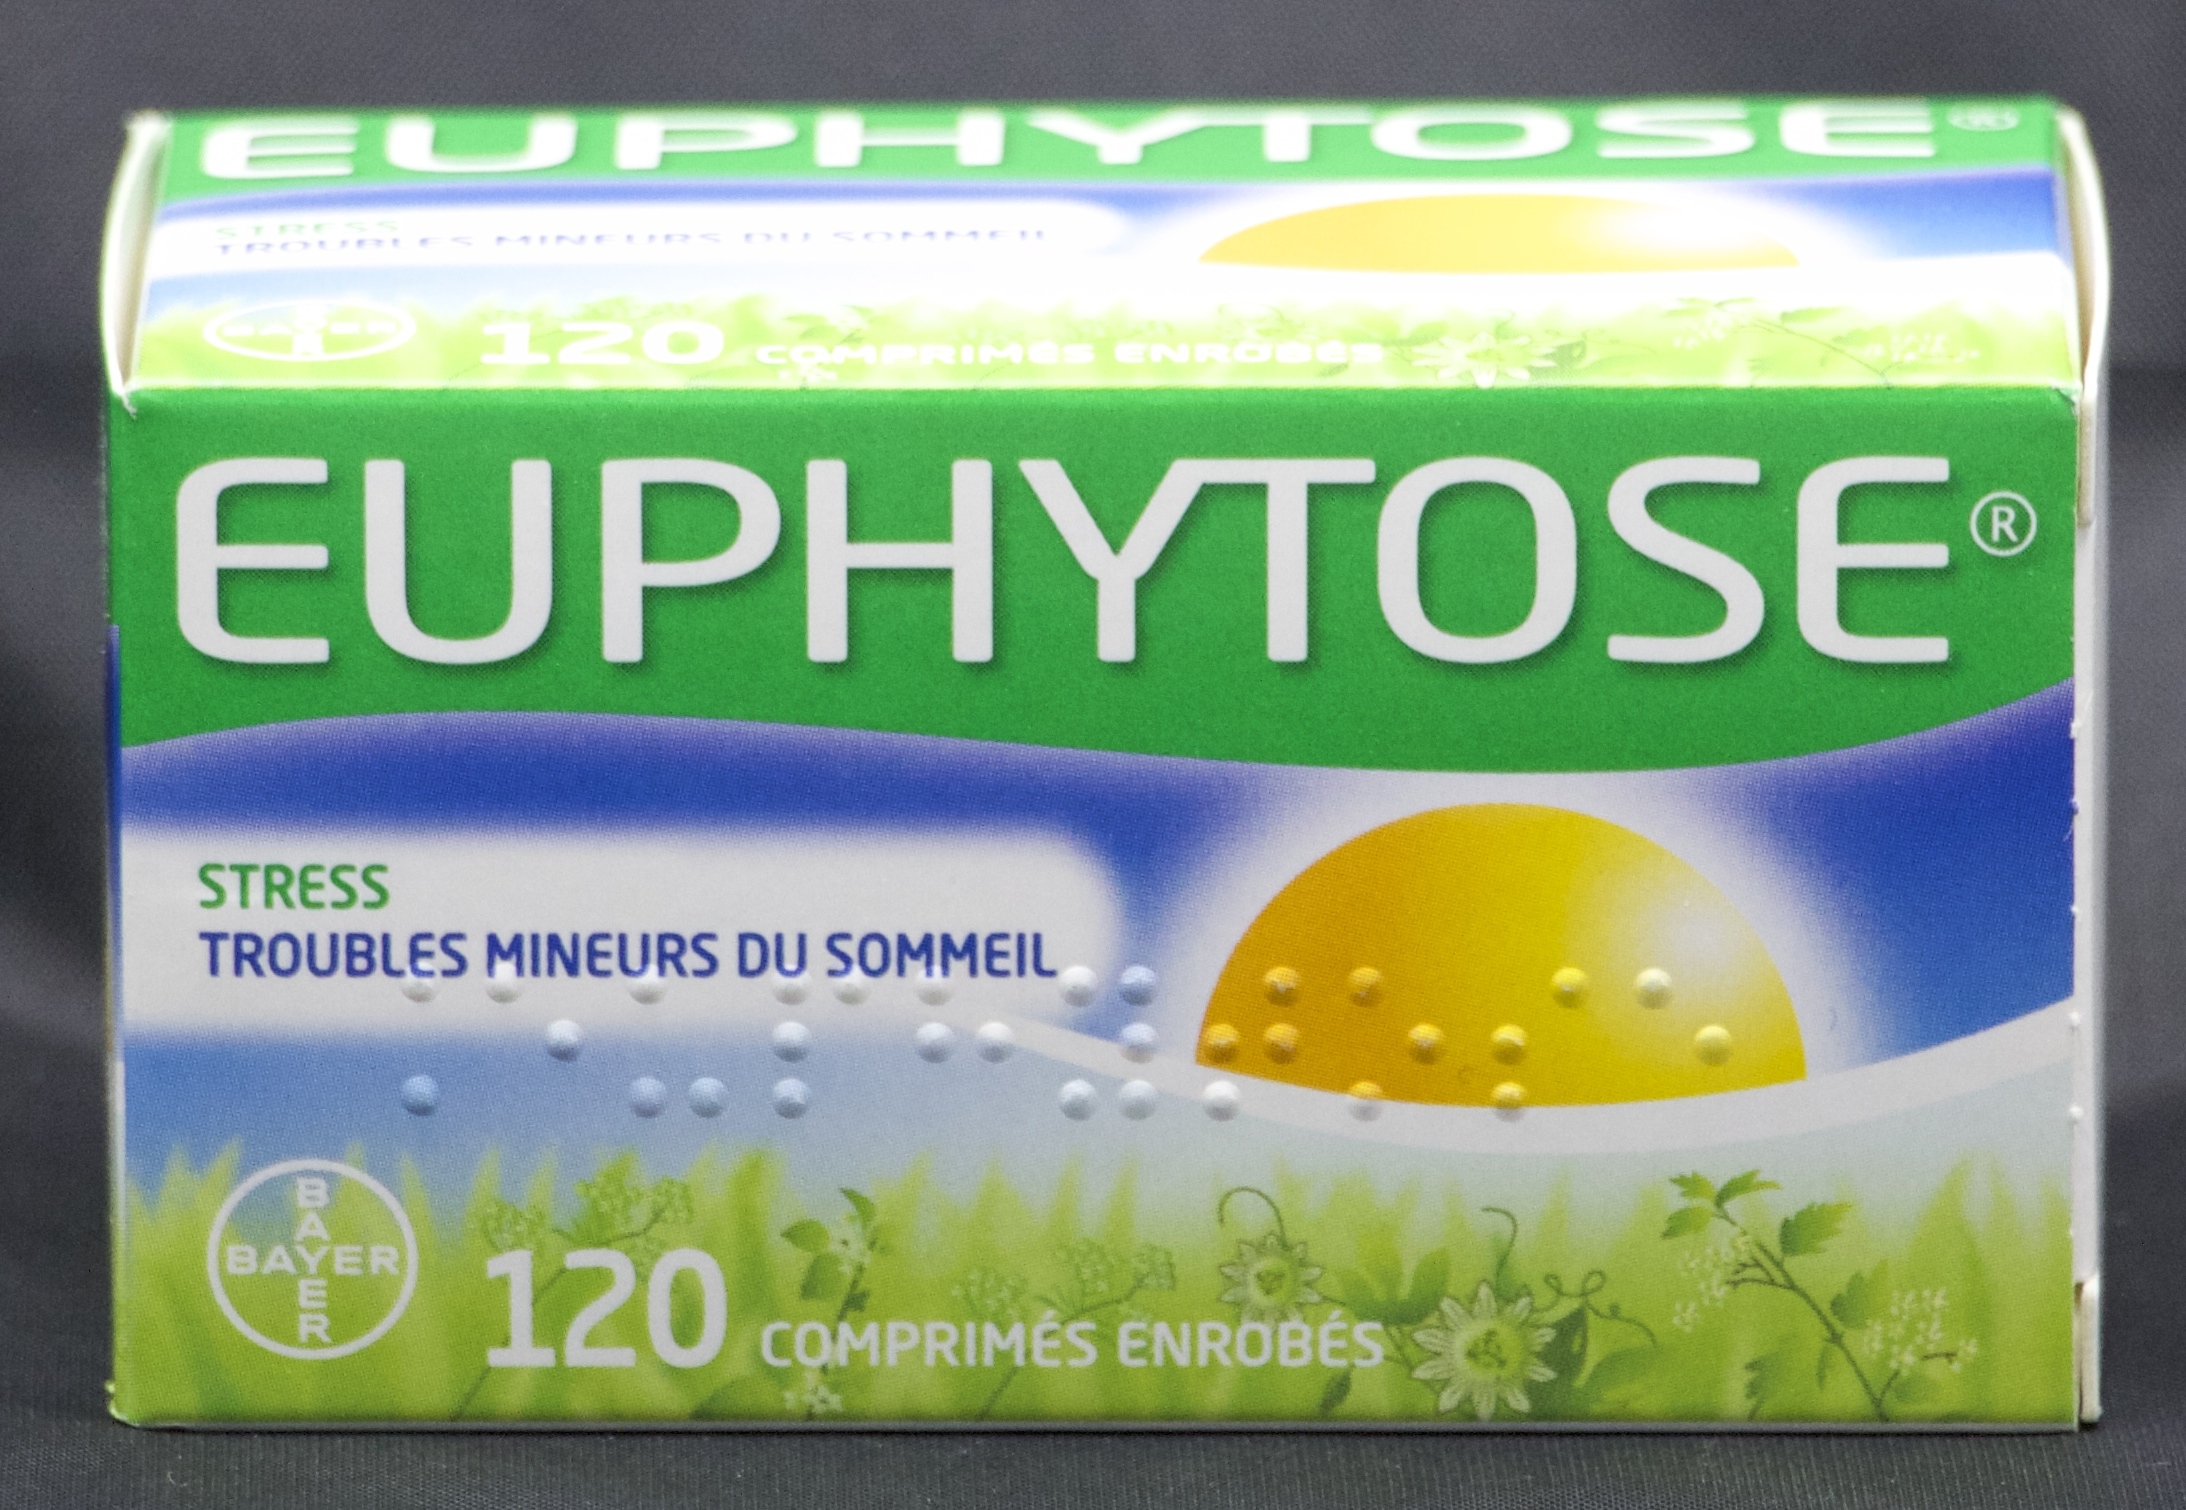 EUPHYTOSE 120 comprimés - Pharma-Médicaments.com